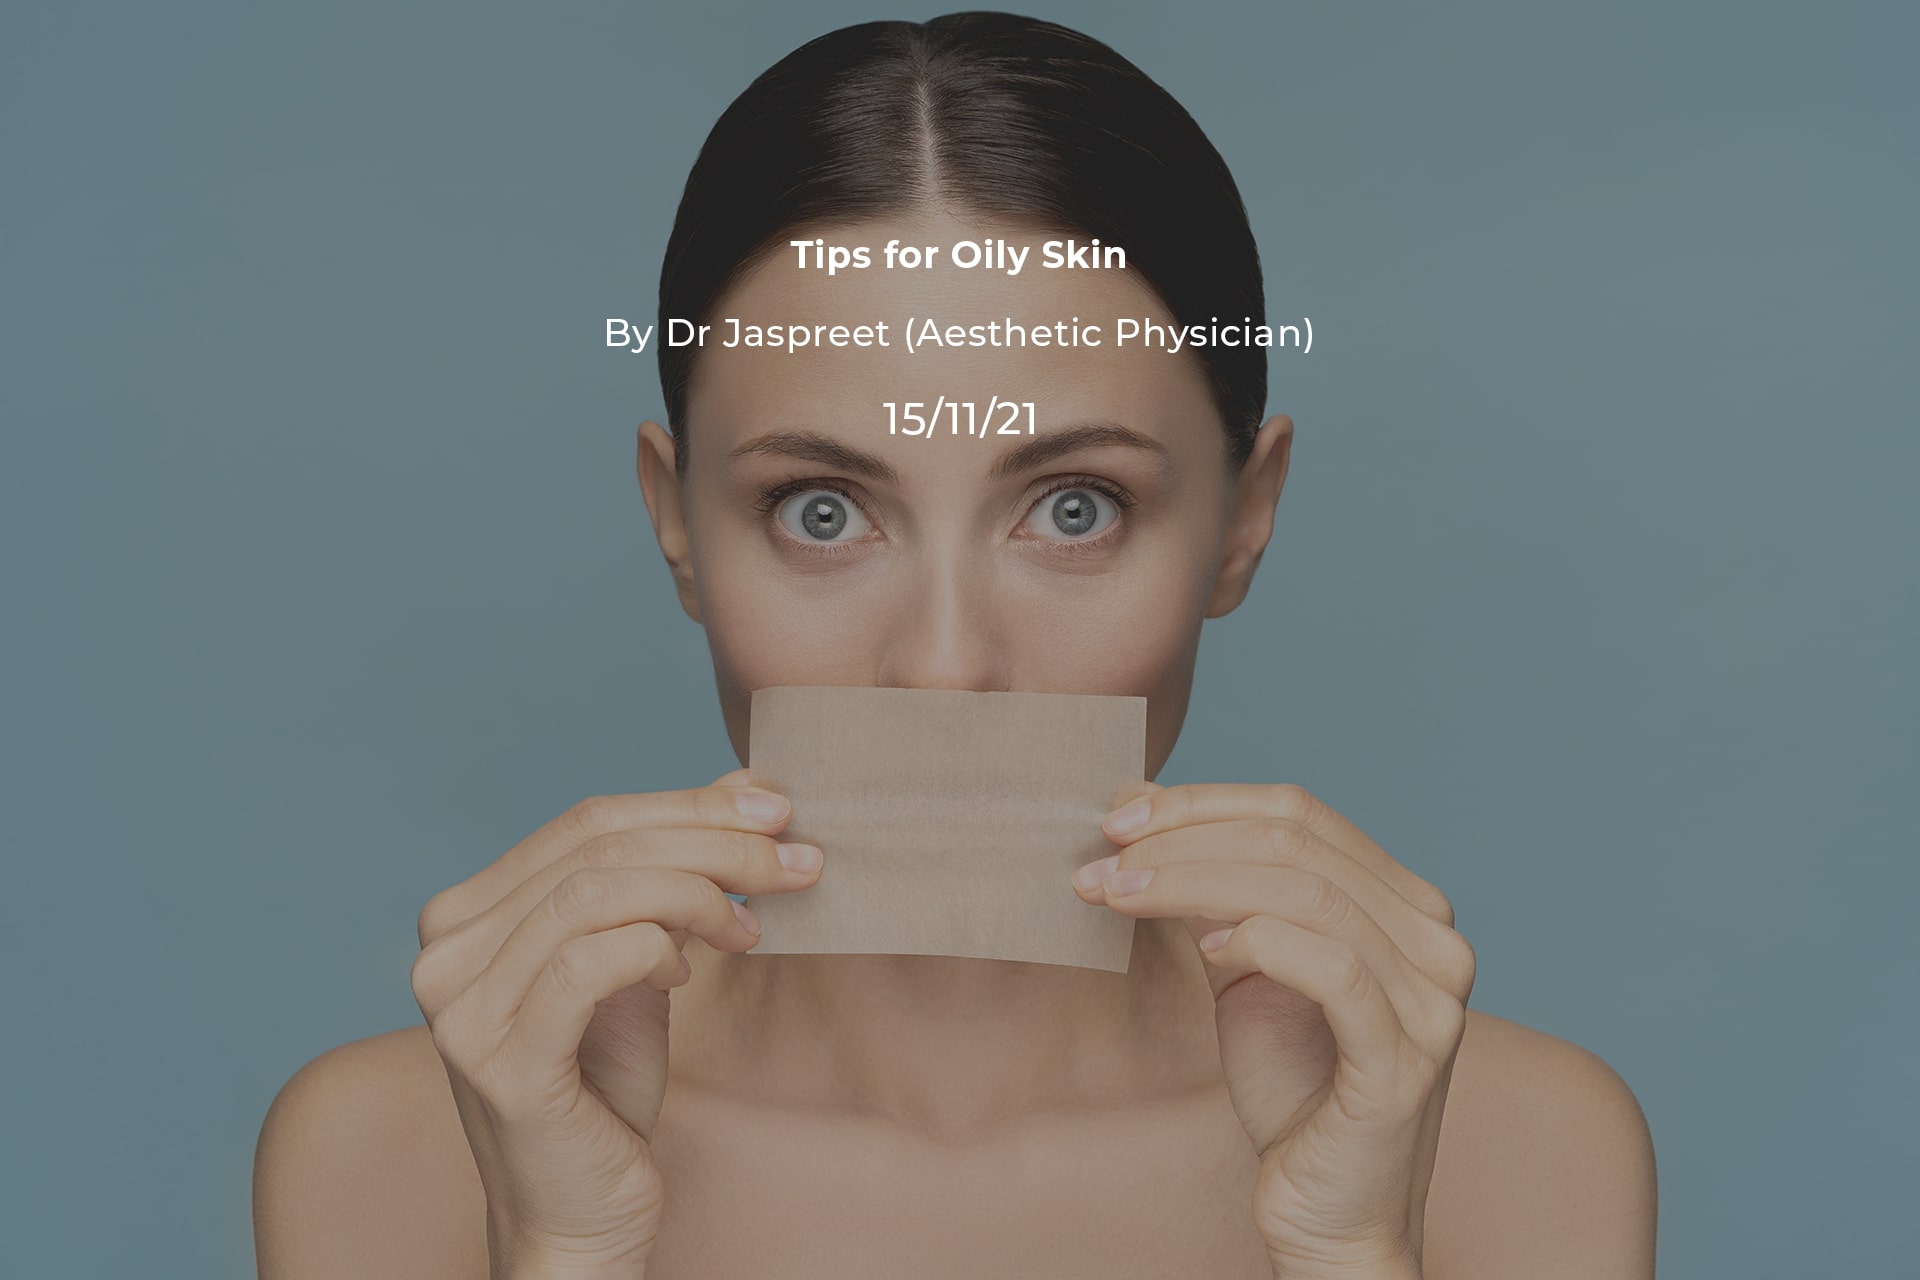 Tips for Oily Skin